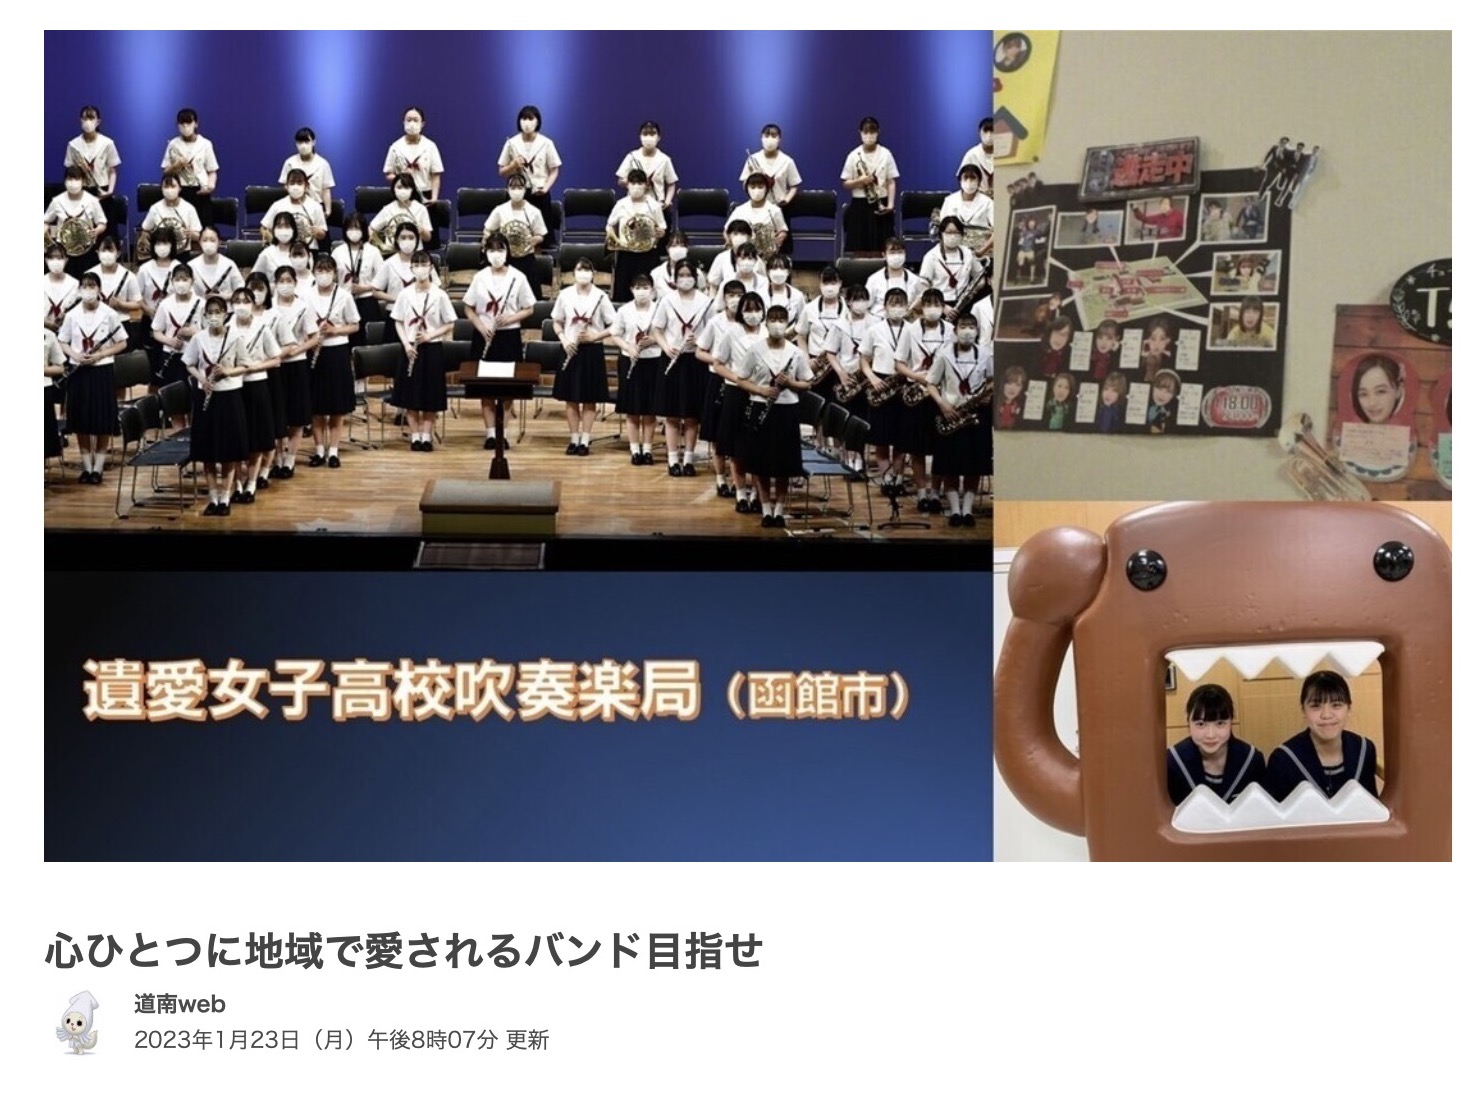 遺愛女子高等学校吹奏楽局の活動の様子を取材した模様がNHK函館放送局にて放送されます。